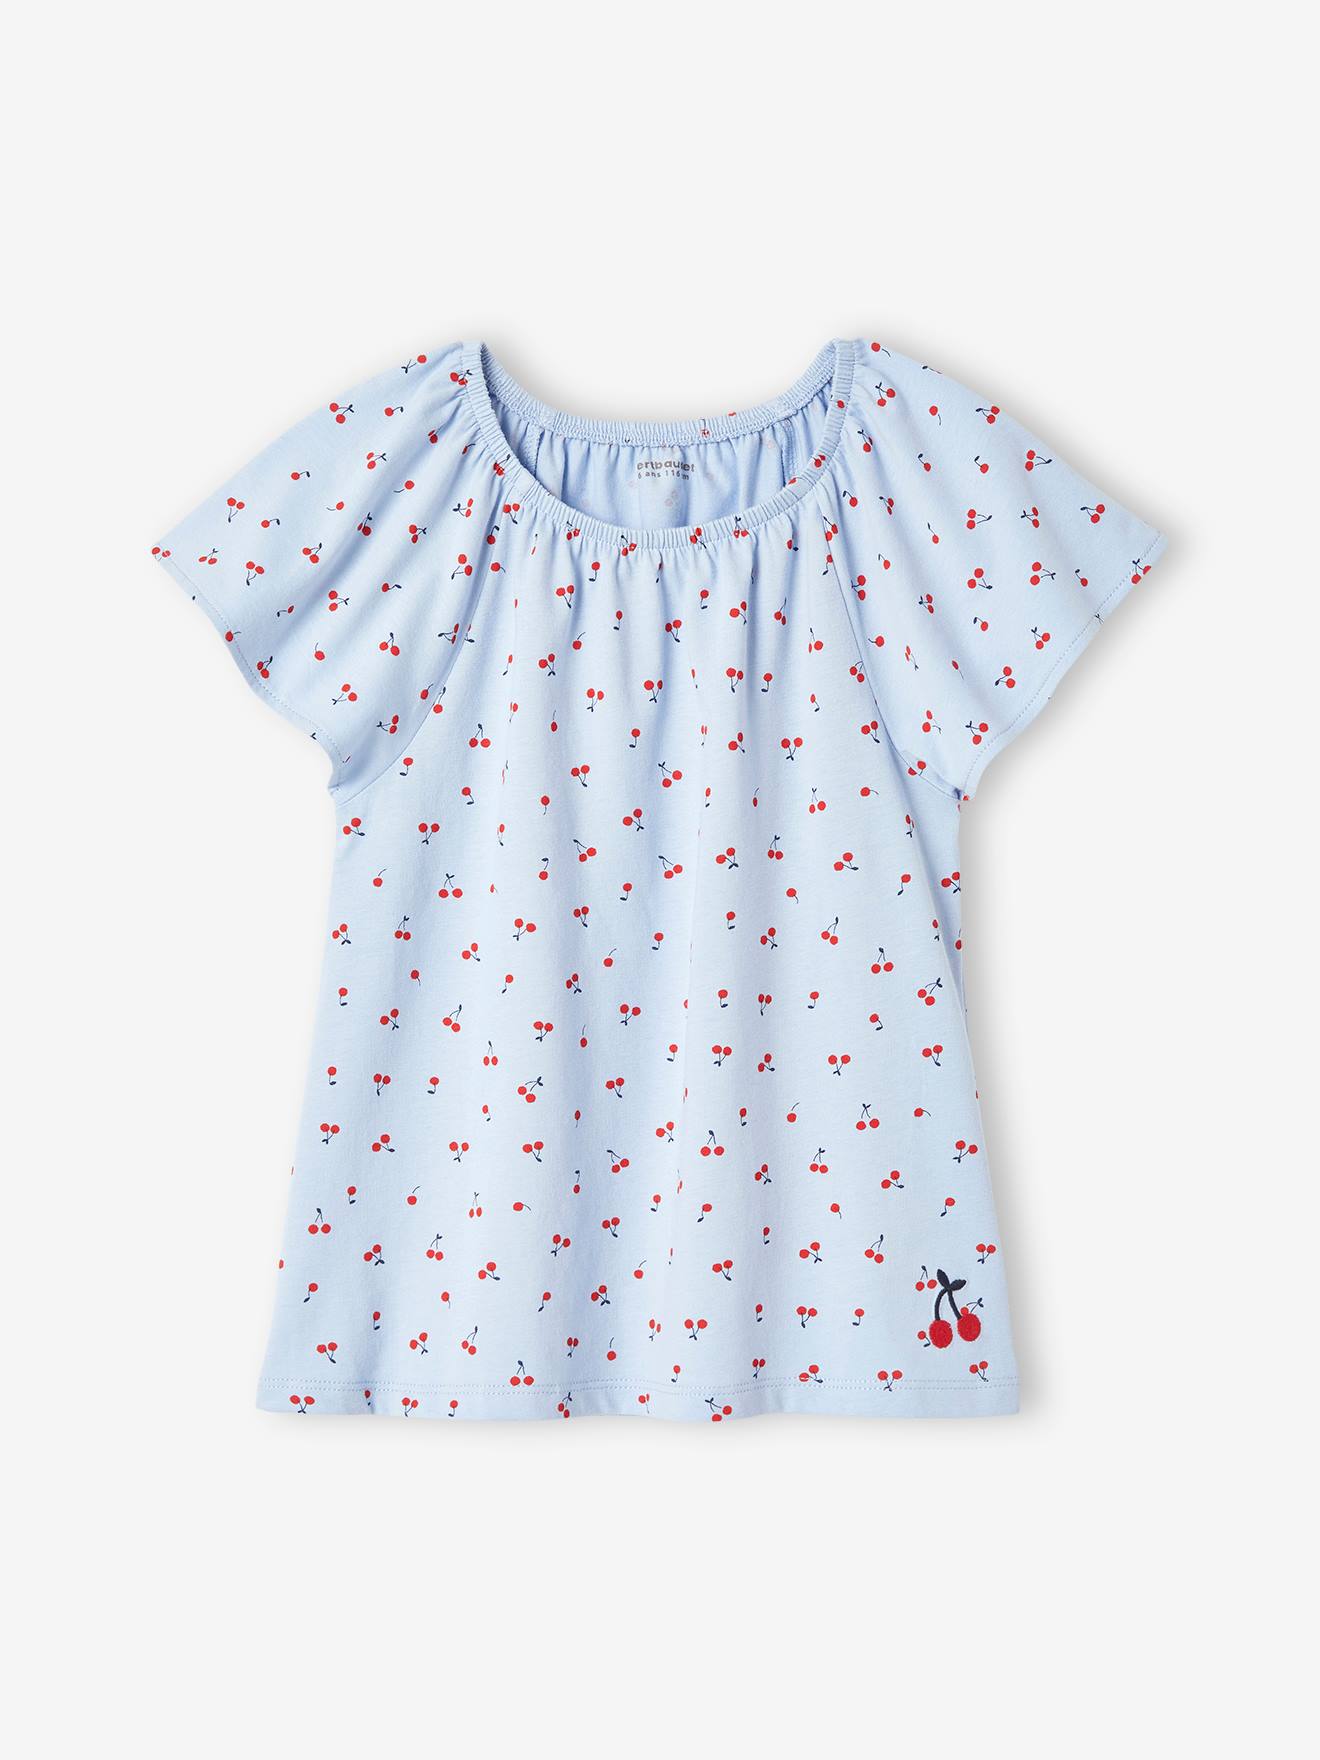 VERTBAUDET Camiseta estampada con mangas mariposa, para niña azul claro